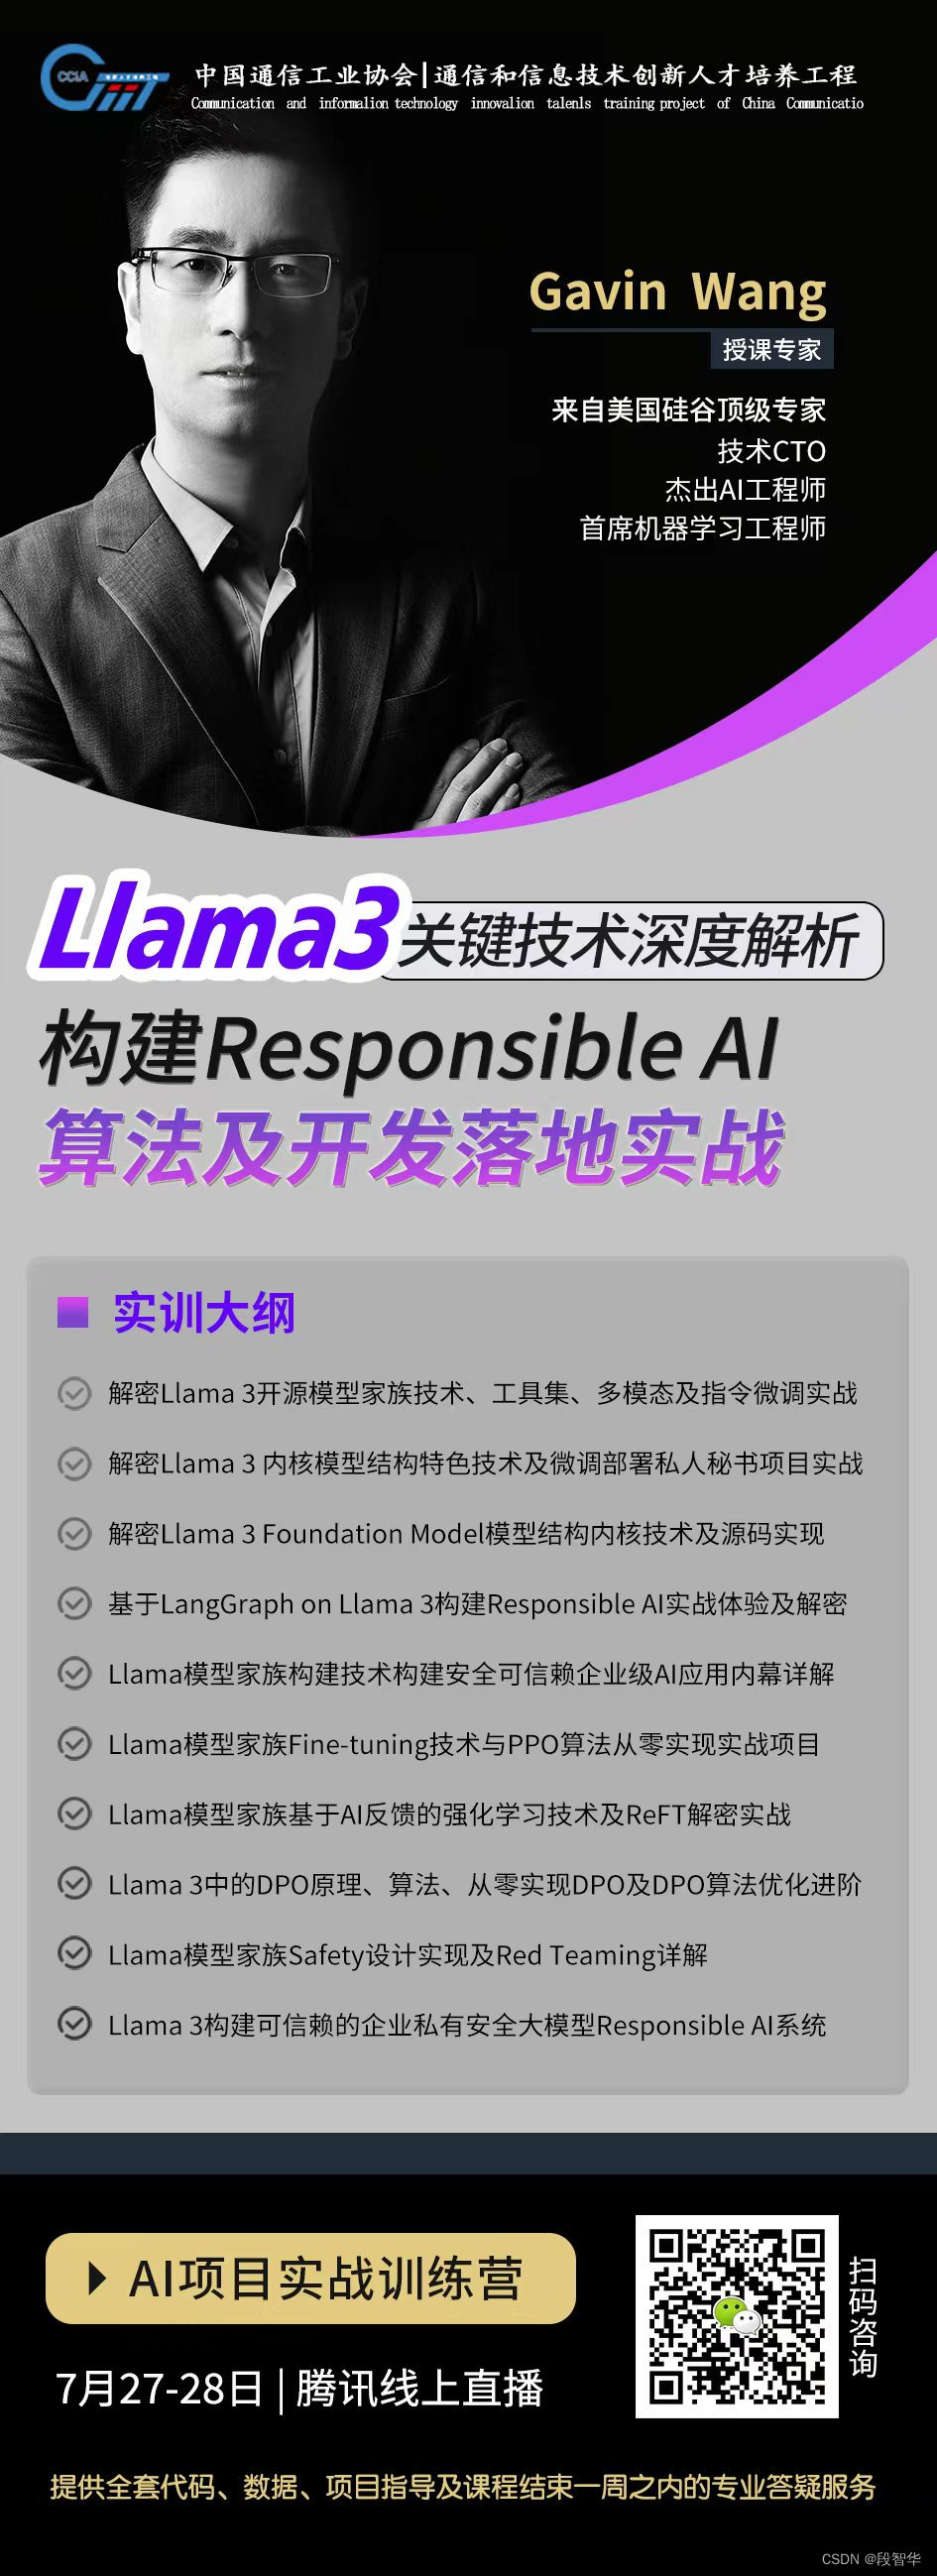 大模型微调之 在亚马逊AWS上实战LlaMA案例（九）